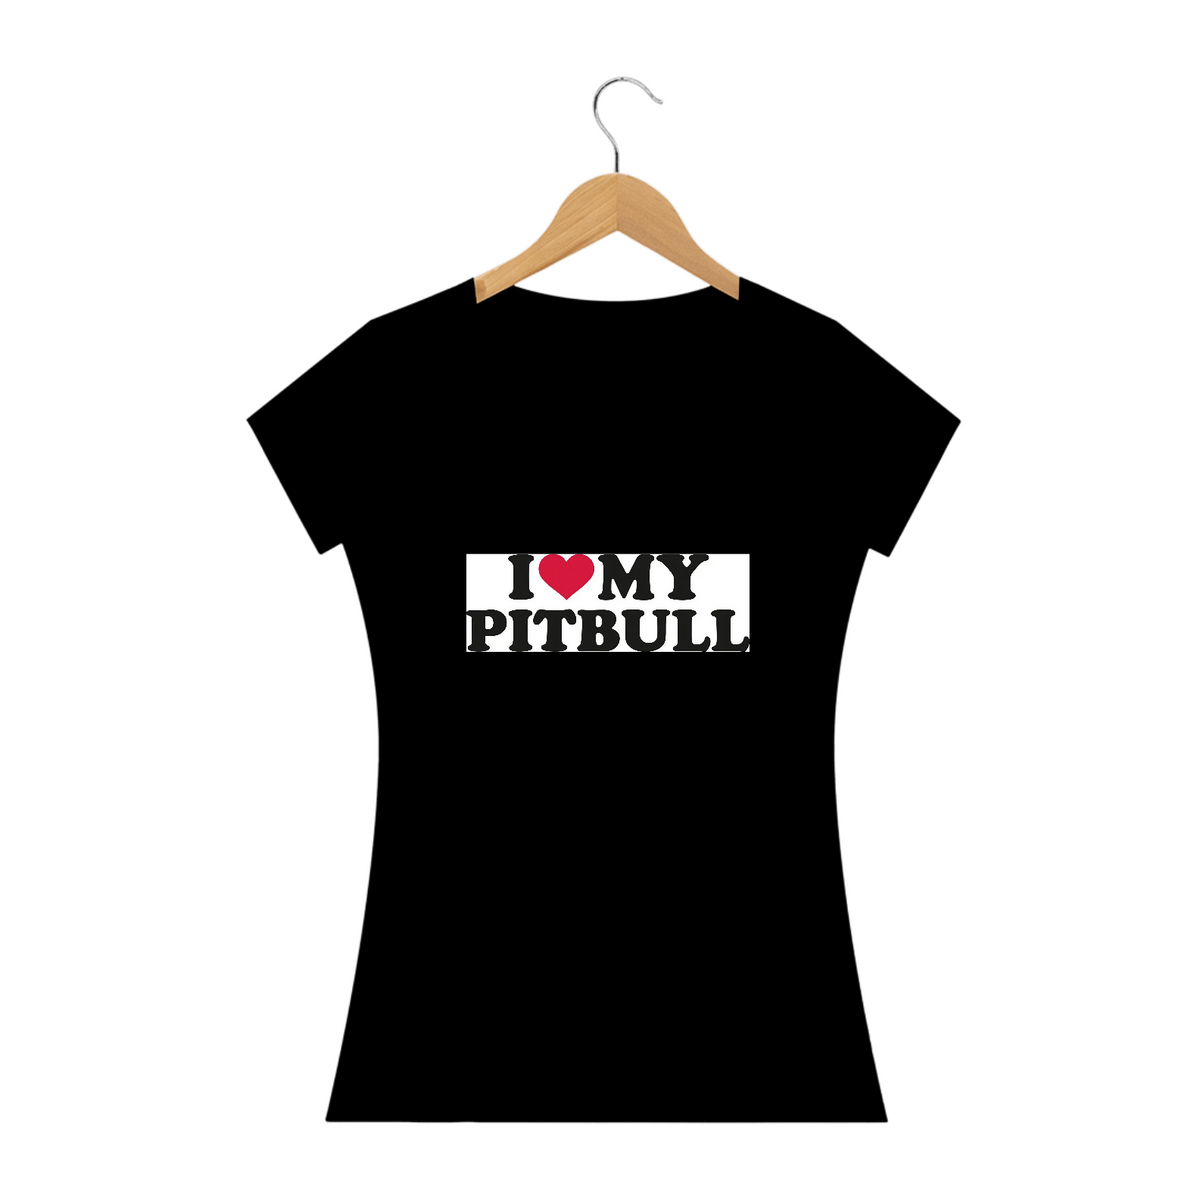 Nome do produto: Eu amo meu pitbull / T-shirt Woman Pitbull